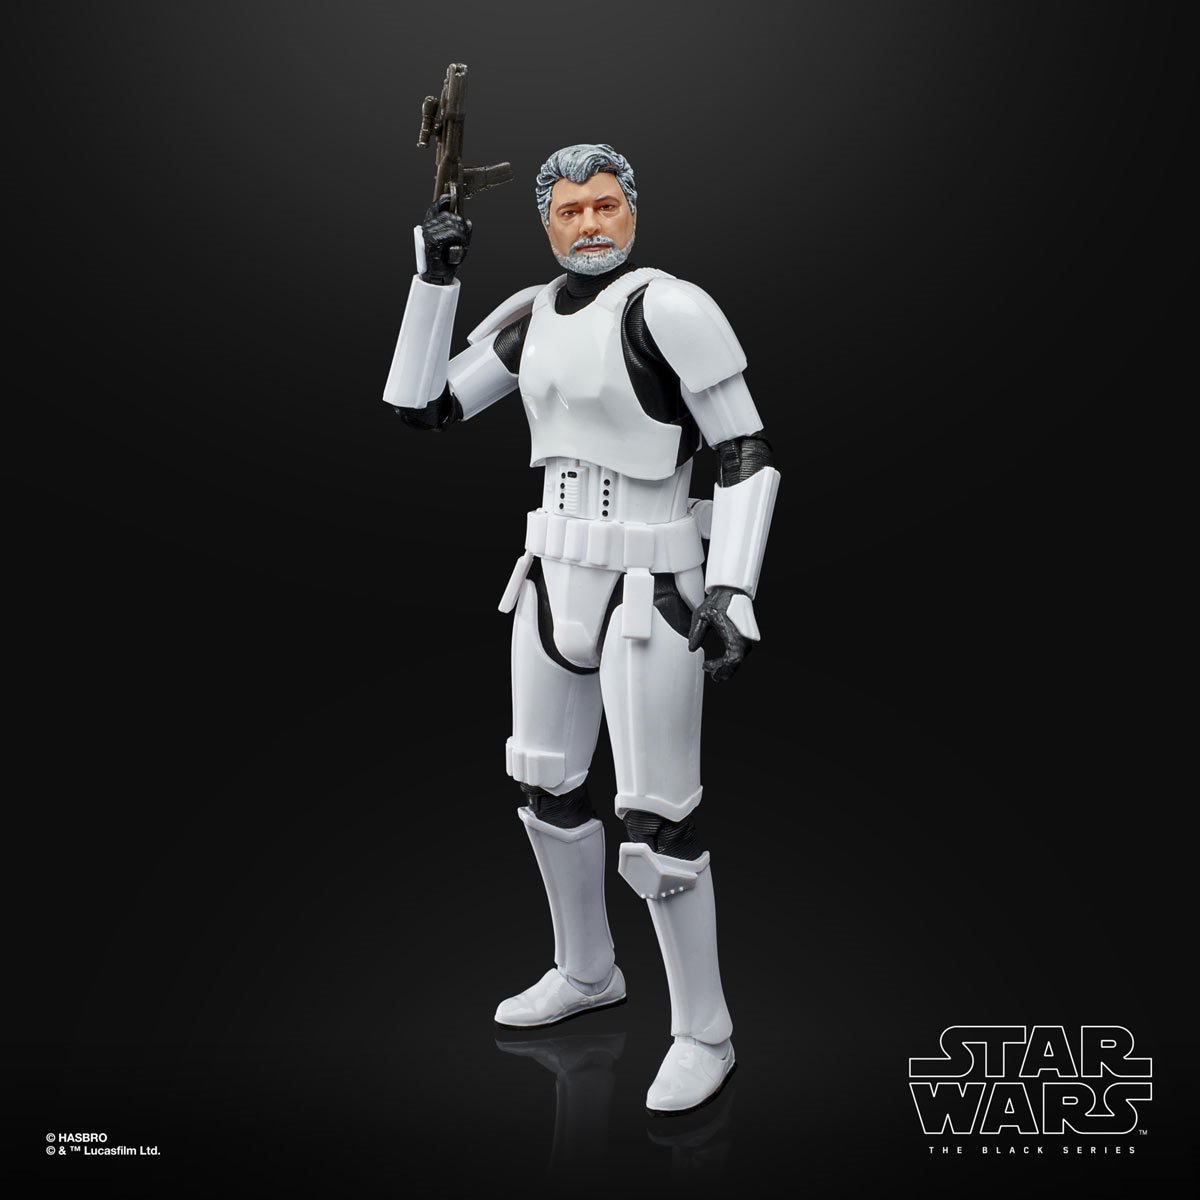 Star Wars: The Black Series George Lucas (in Stormtrooper Disguise) Hasbro